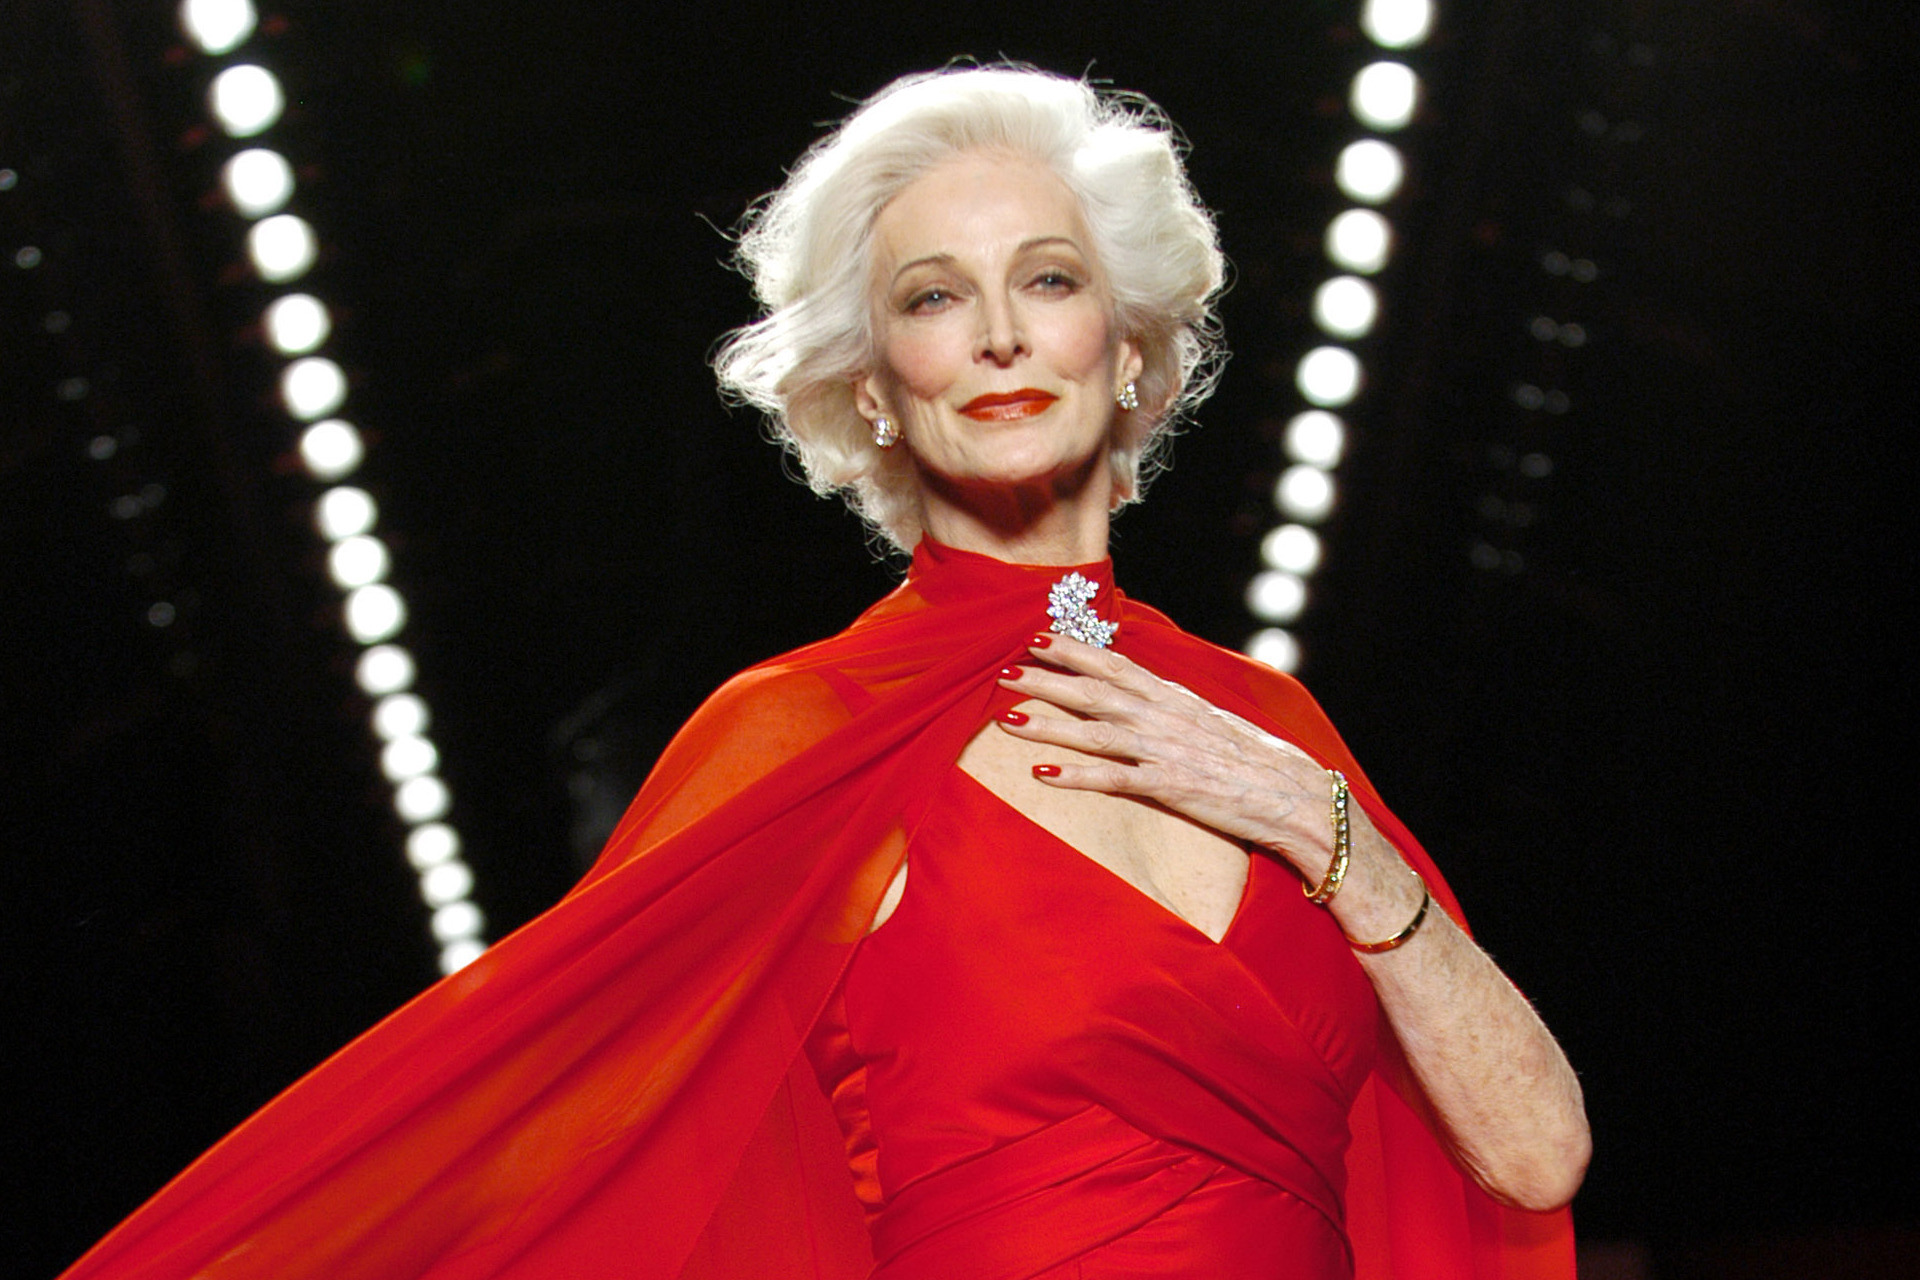 Ha 92 anni ed è la top model più longeva della storia della moda